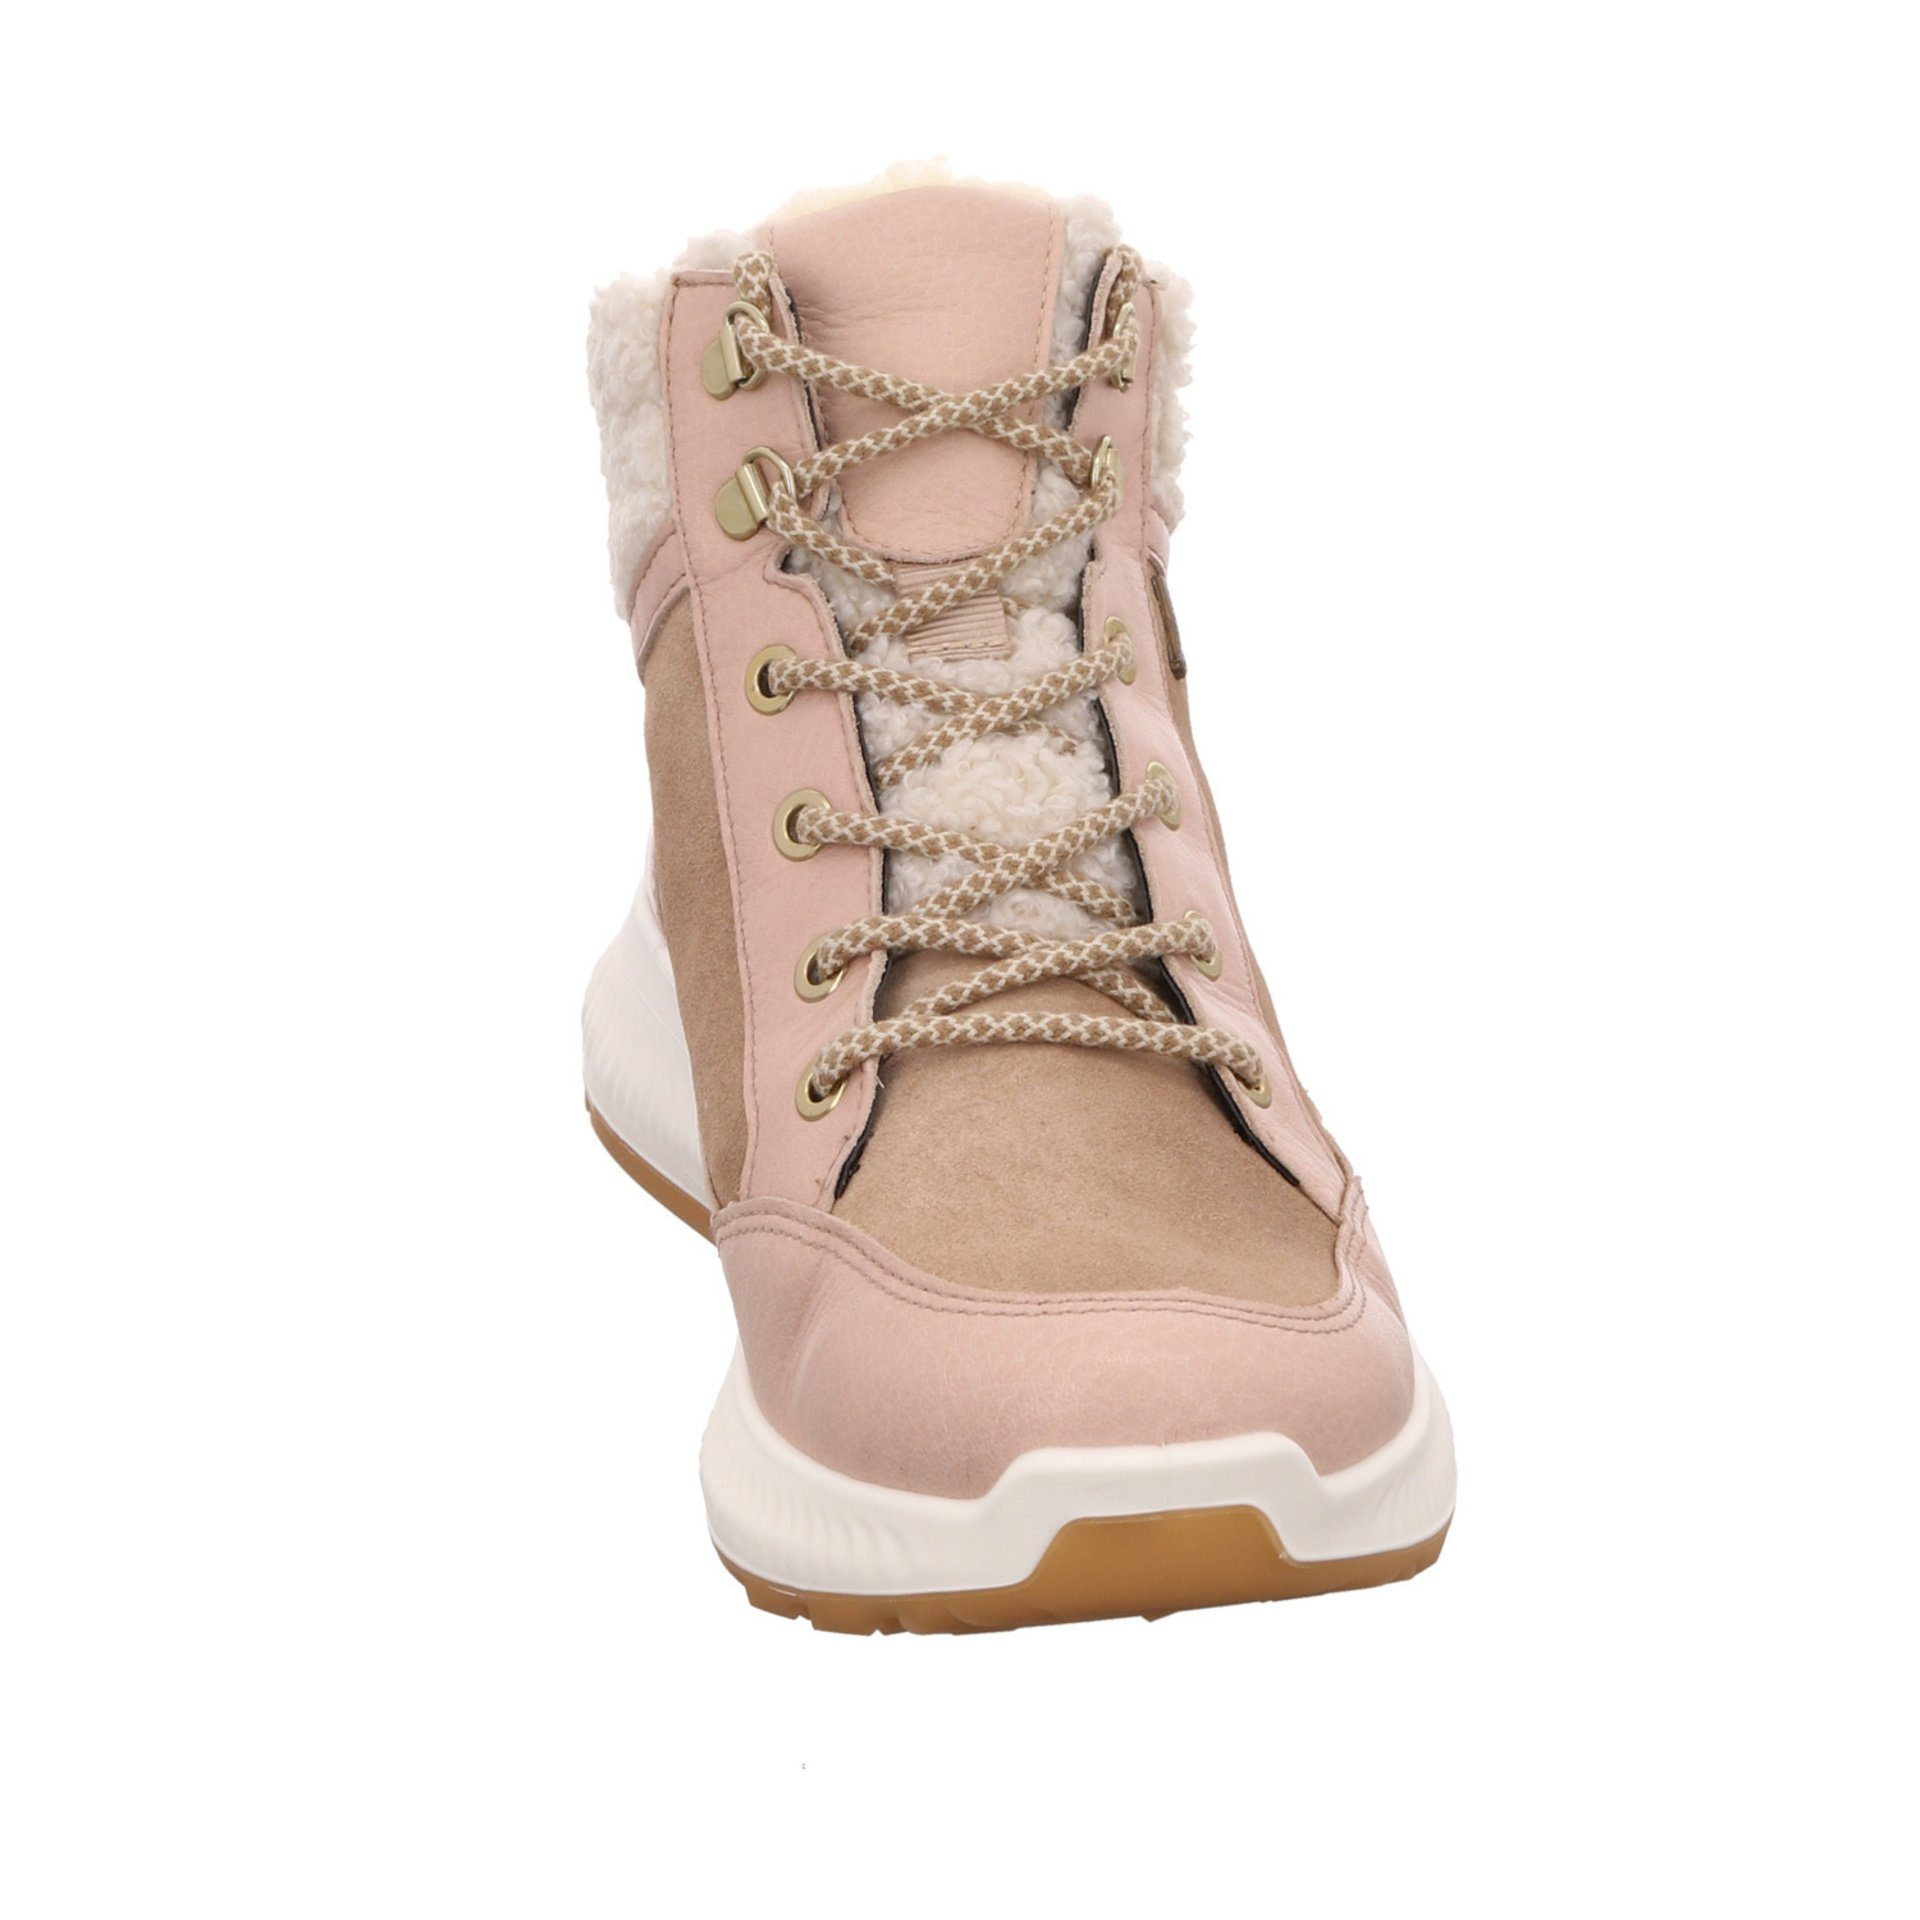 Schuhe Freizeit Leder-/Textilkombination Stiefel Elegant Boots beige 046744 Hiker Ara Stiefelette Damen